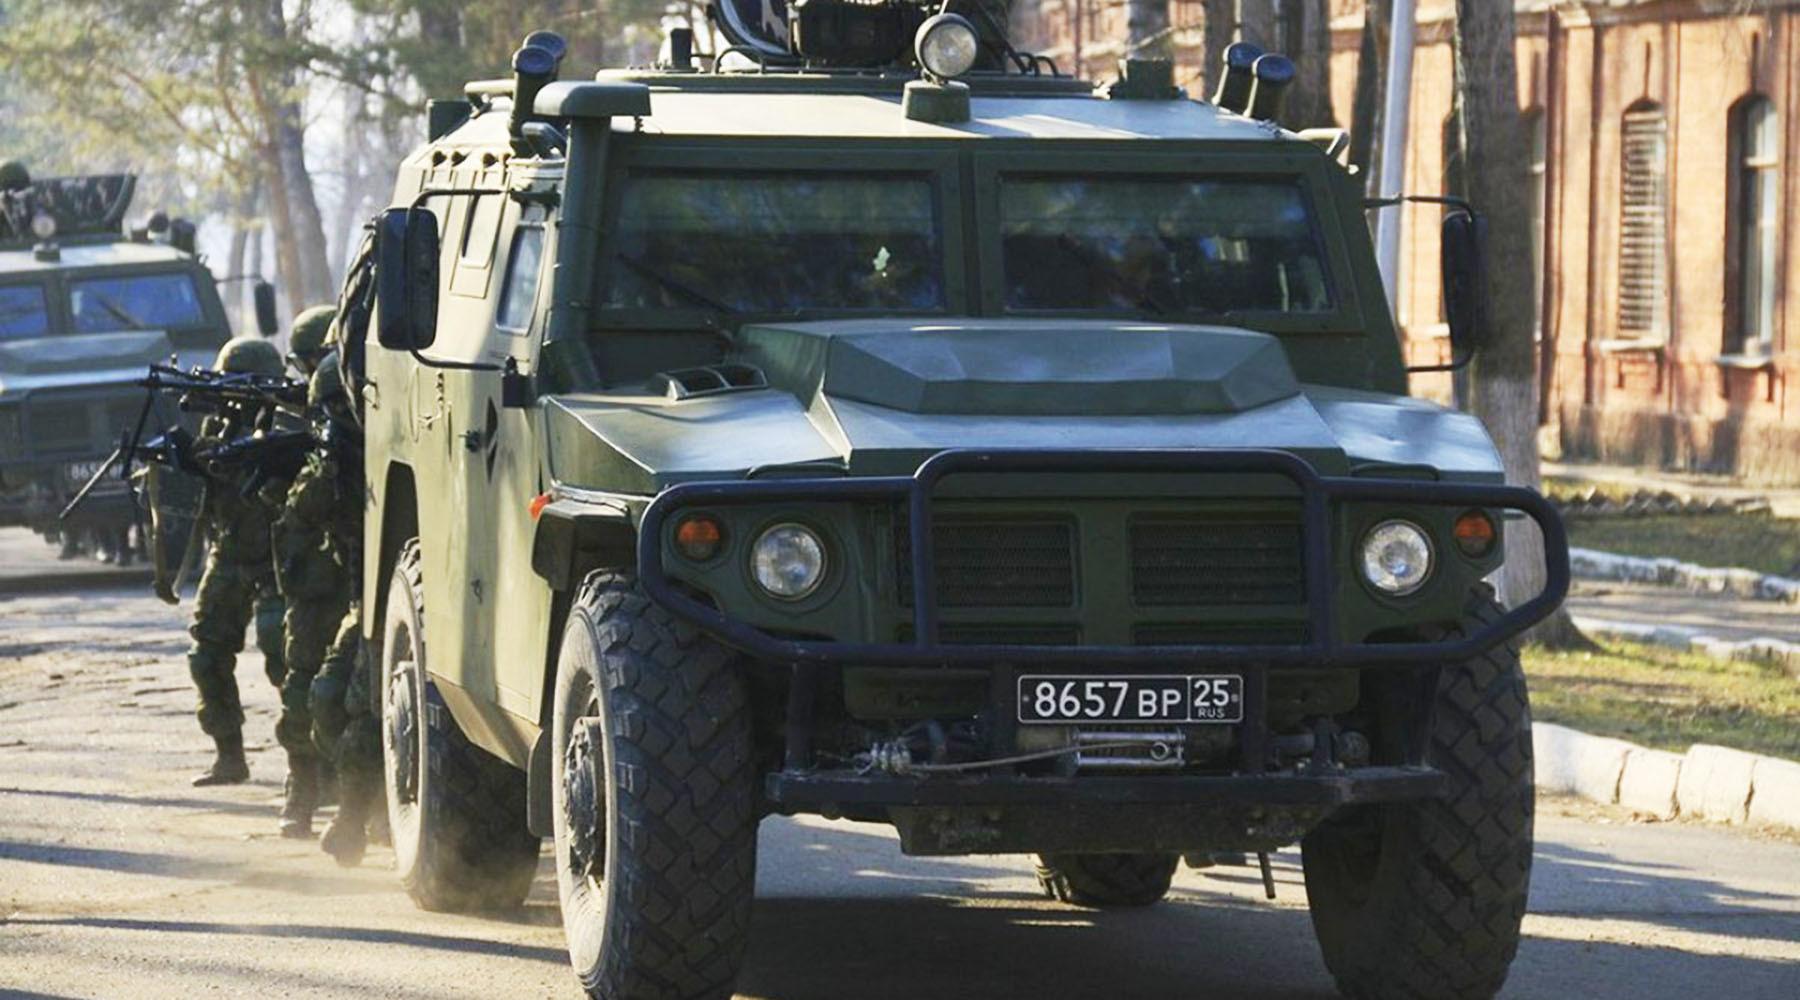 «Конструктивно ближе к бронетранспортёру»: на что способен российский армейский автомобиль «Тигр-М»